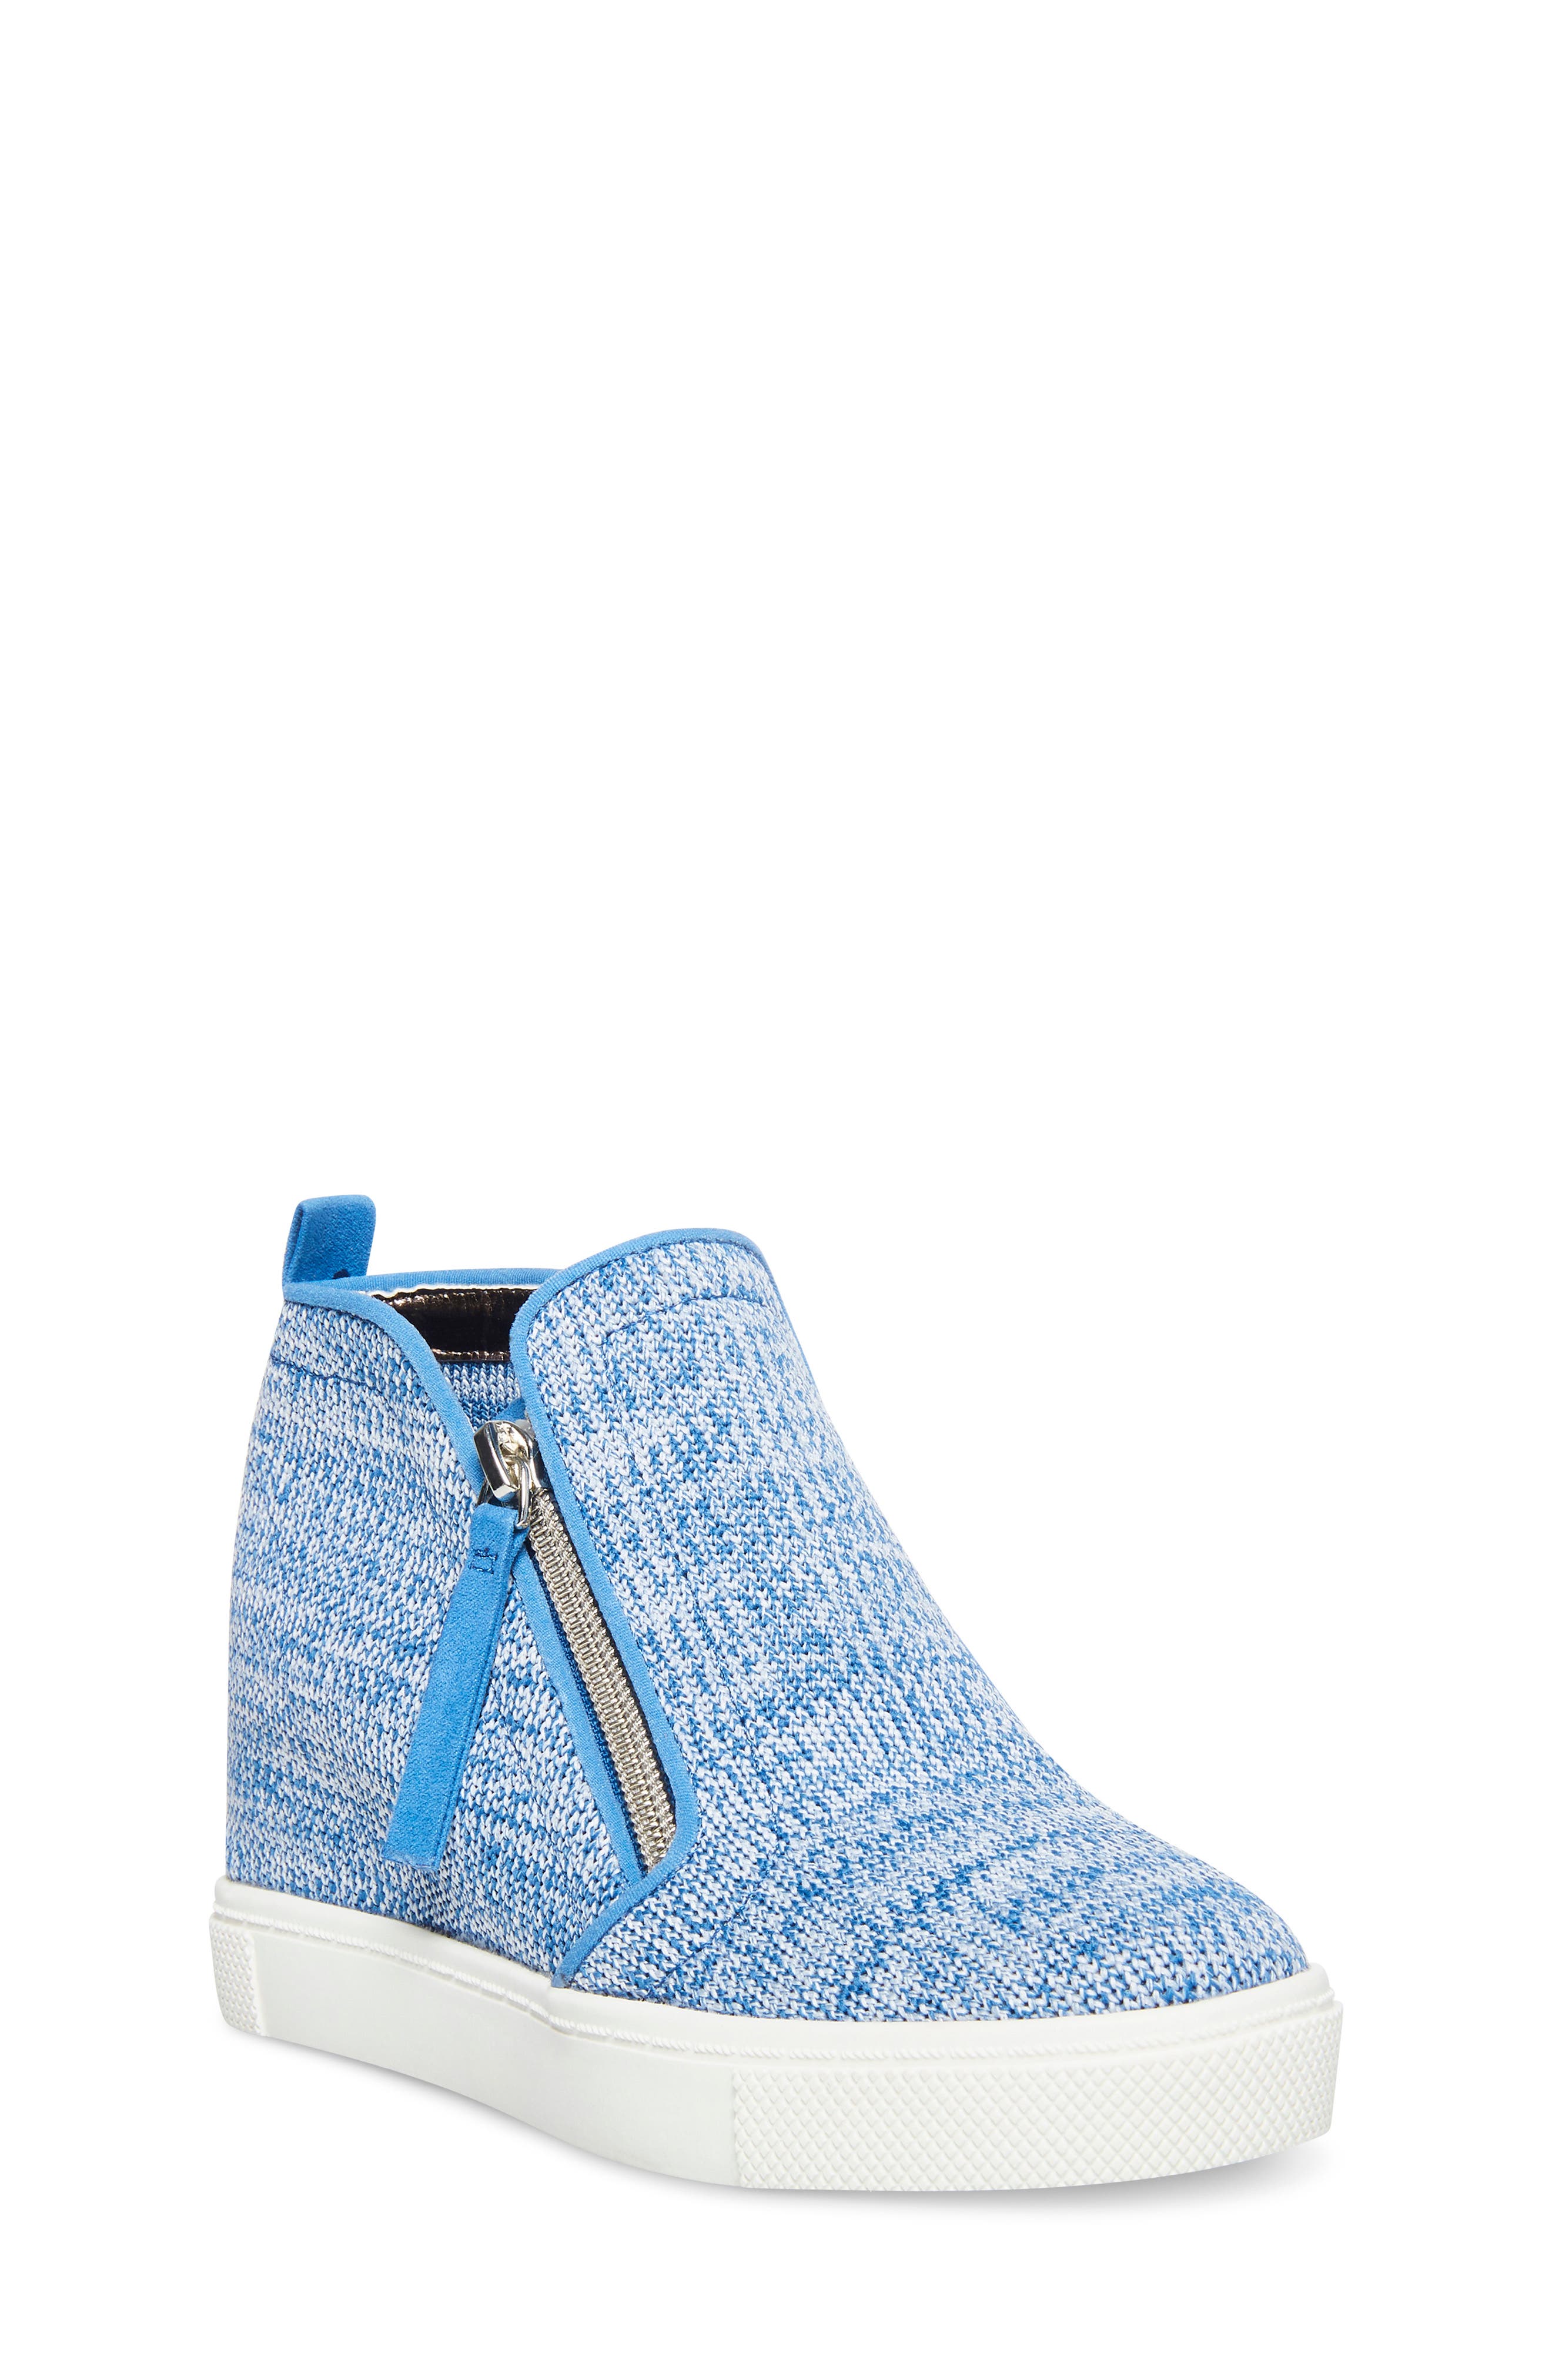 Steve Madden Kids' Caliber Wedge Sneaker In Blue